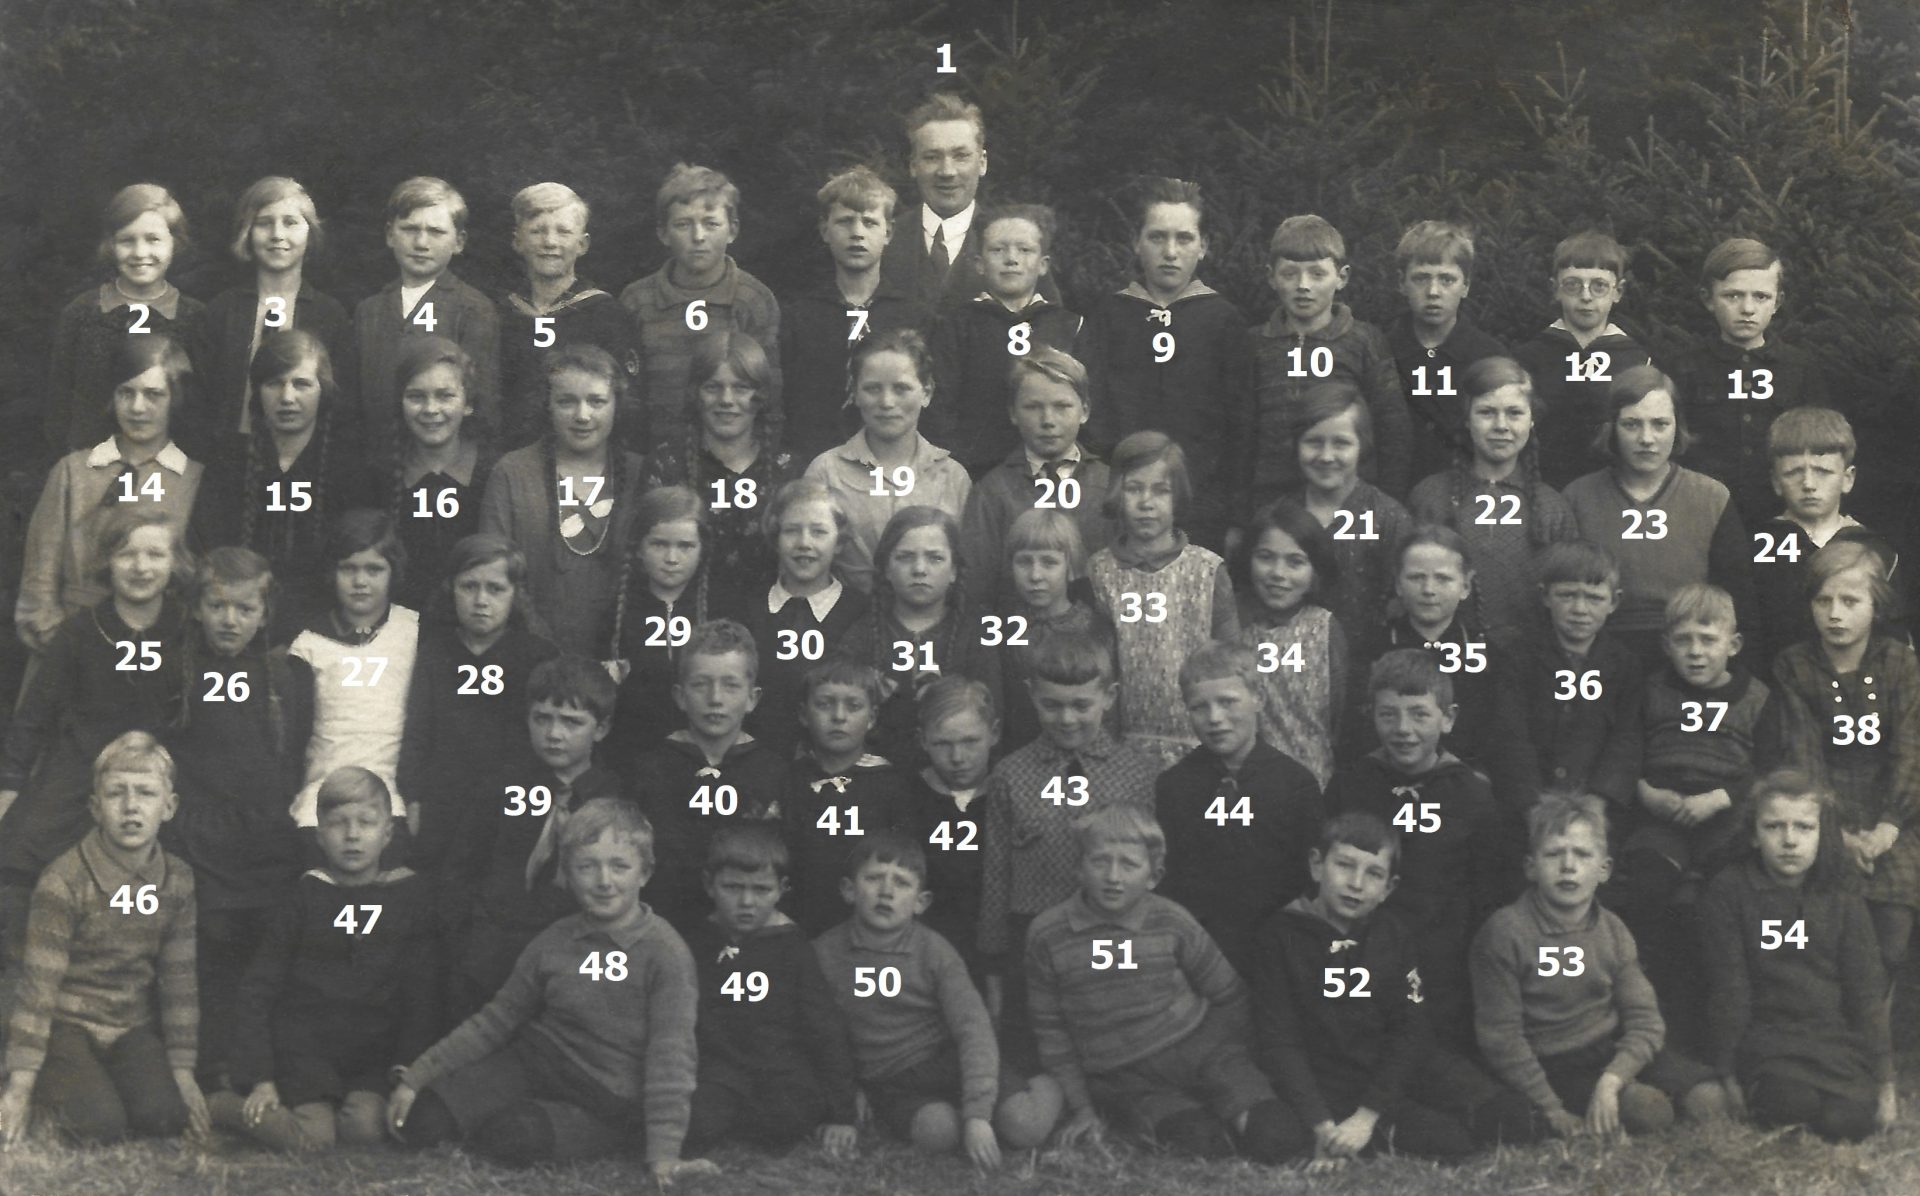 Vind Skole 1933. Klik på billedet for at se det i større format.